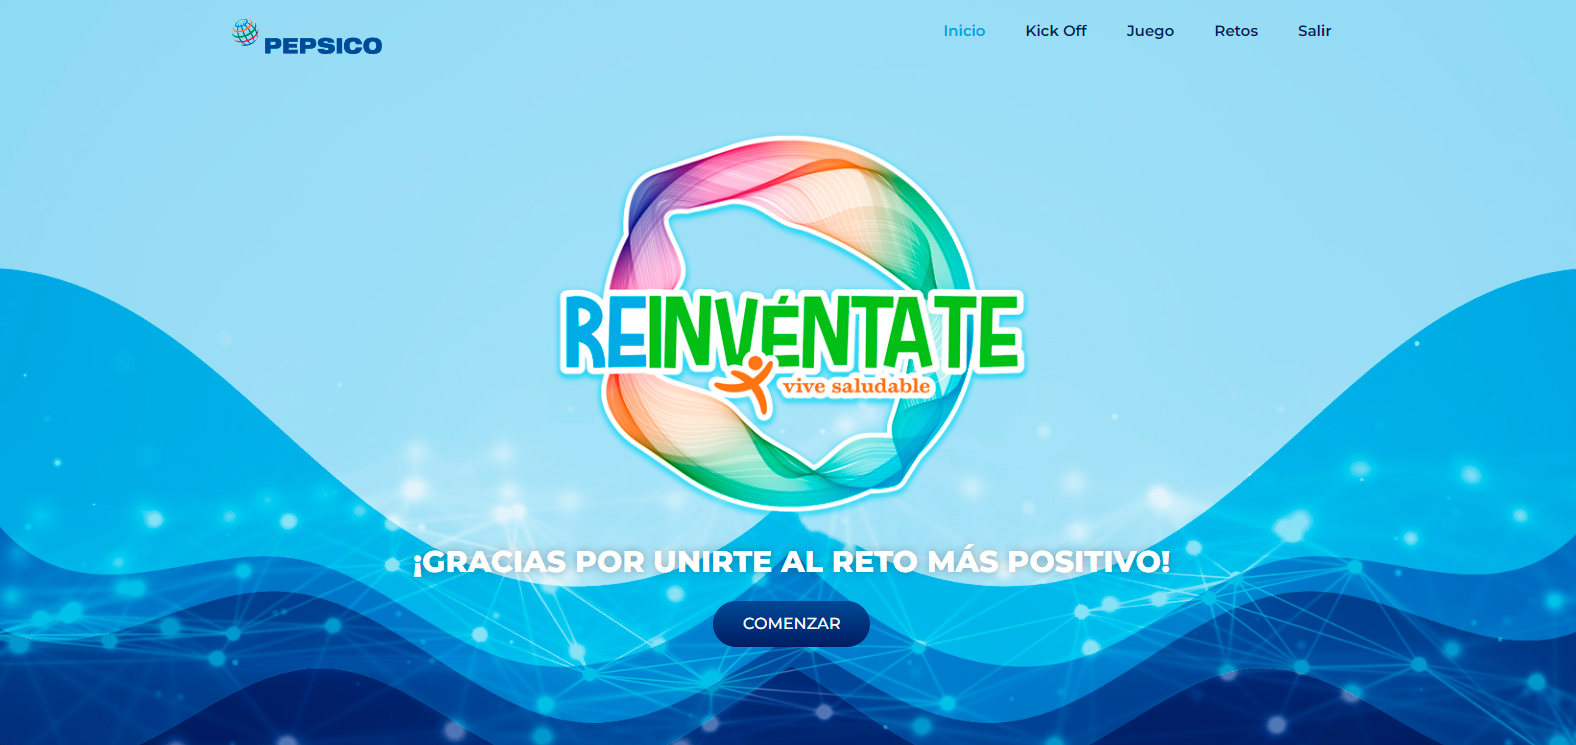 reinventate_pepsico